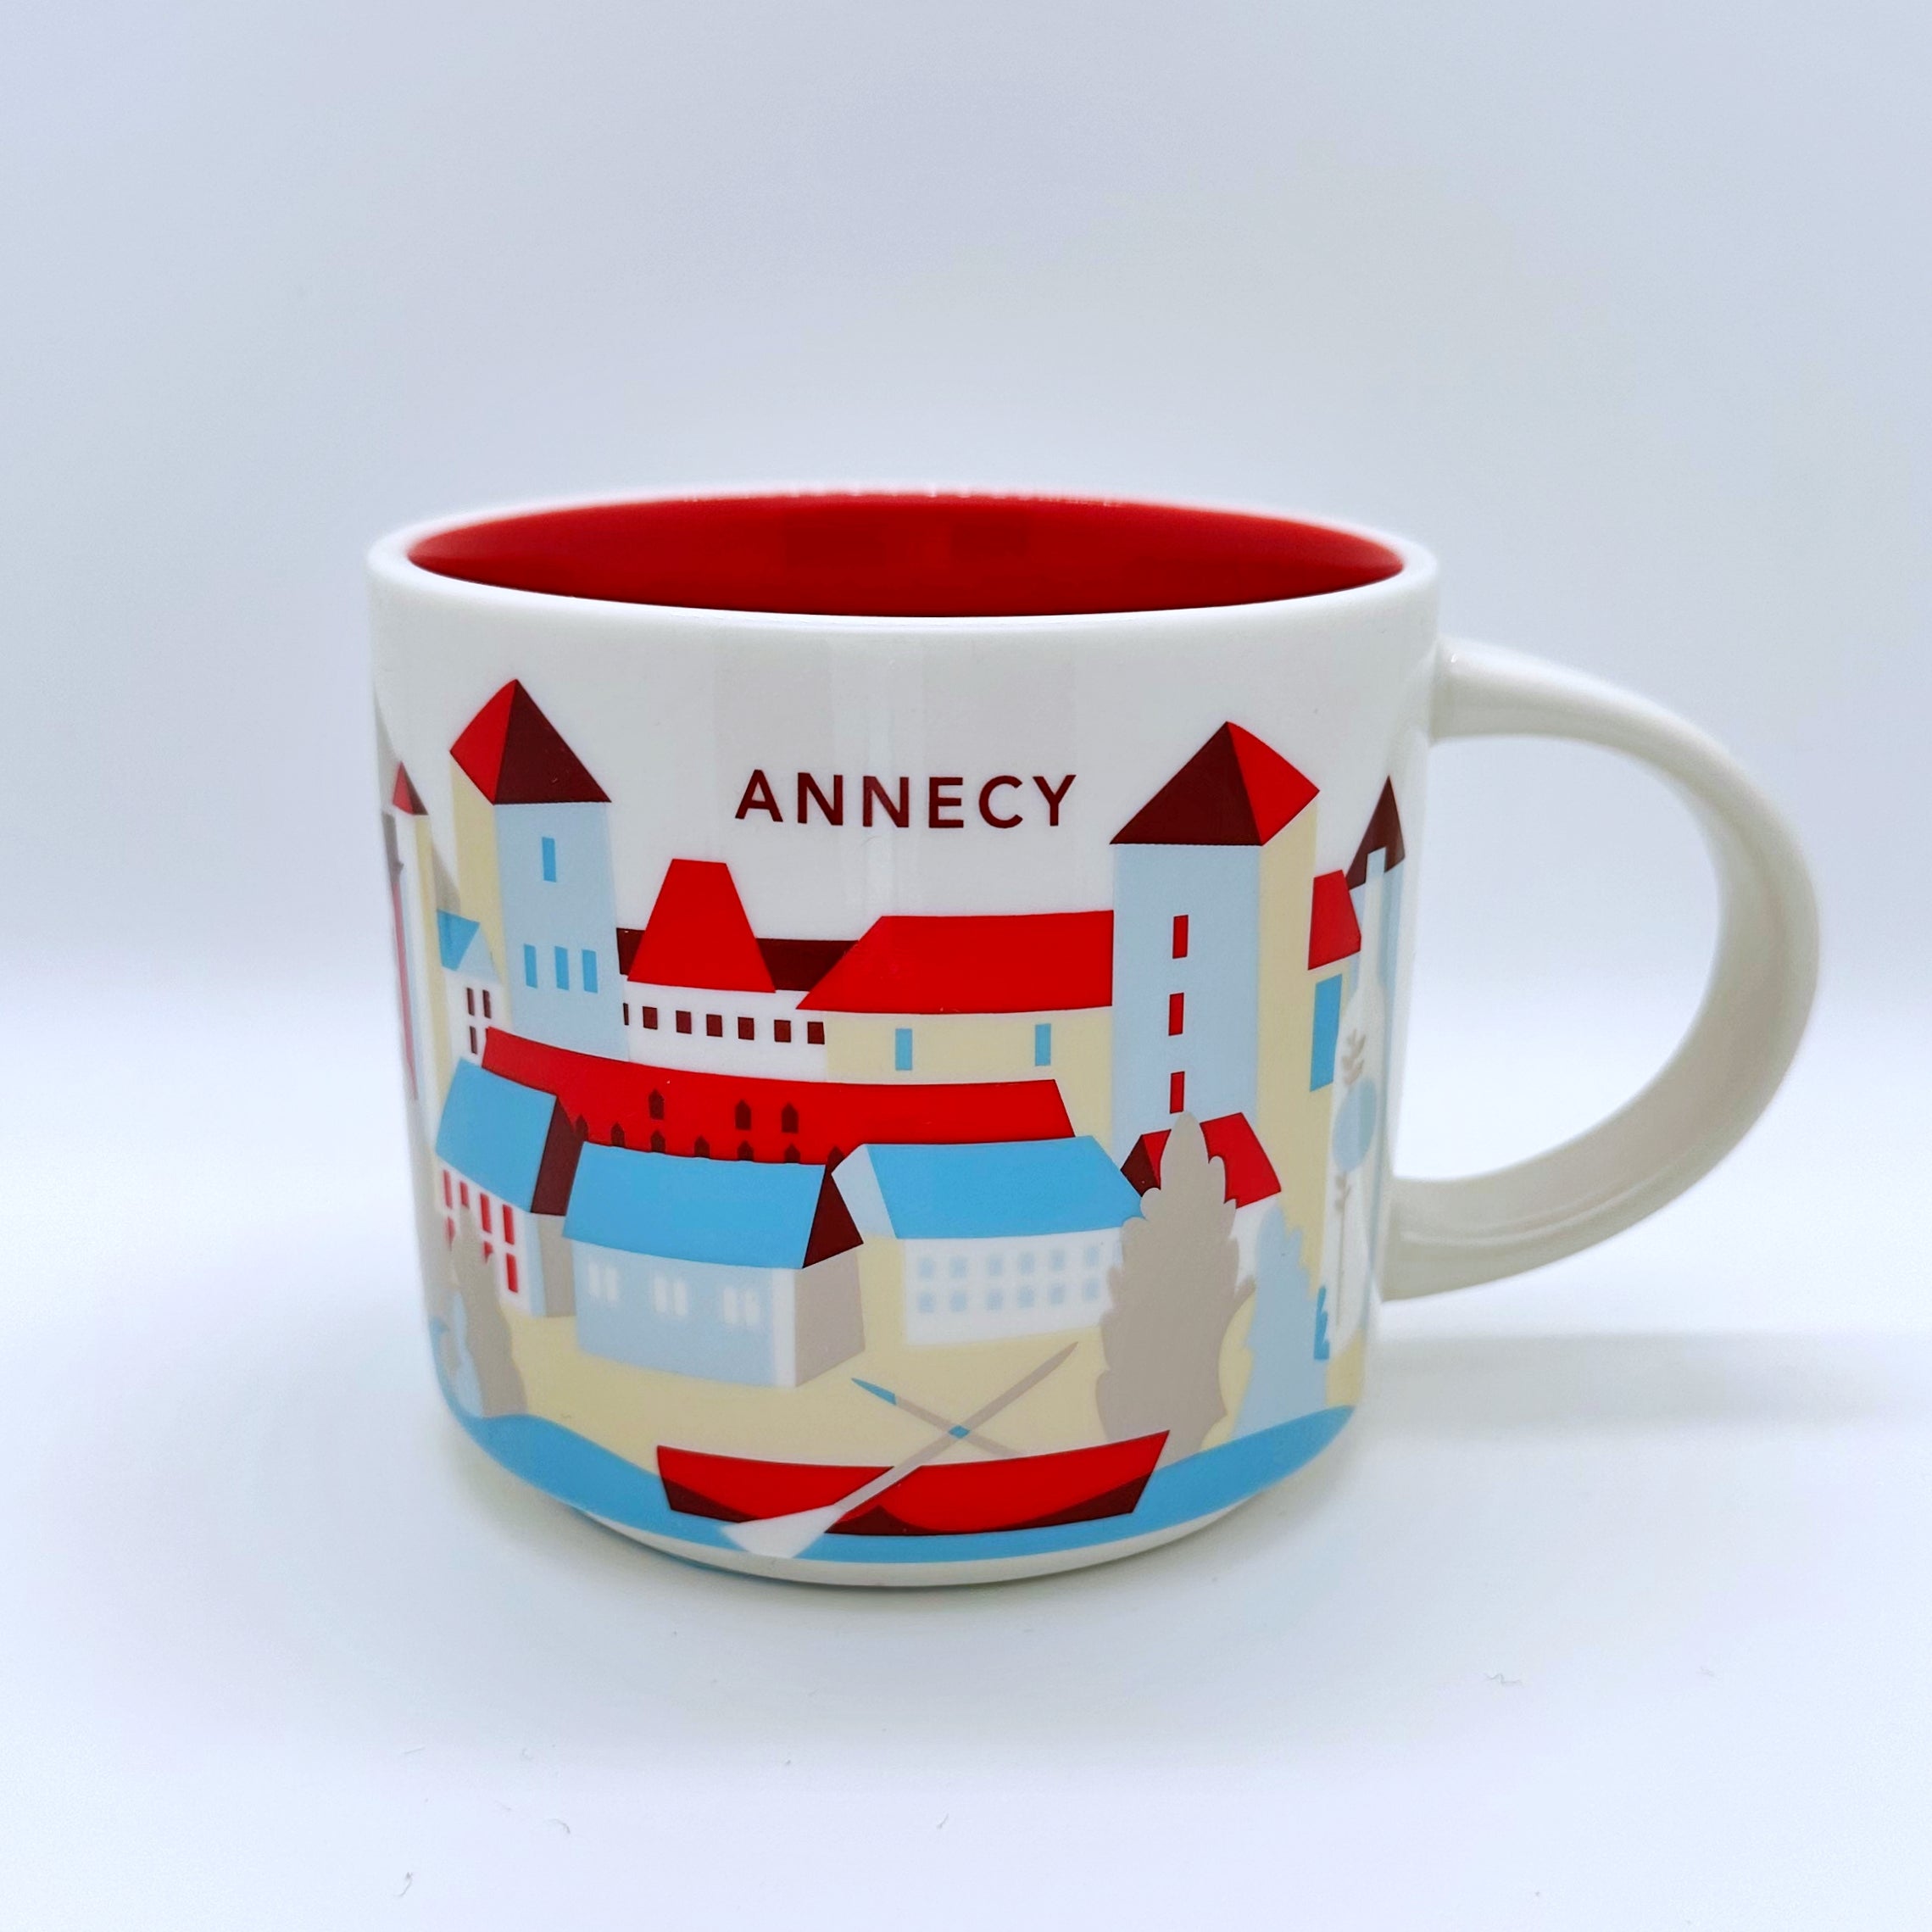 Kaffee Tee oder Cappuccino Tasse von Starbucks mit gemalten Bildern aus der Stadt Annecy